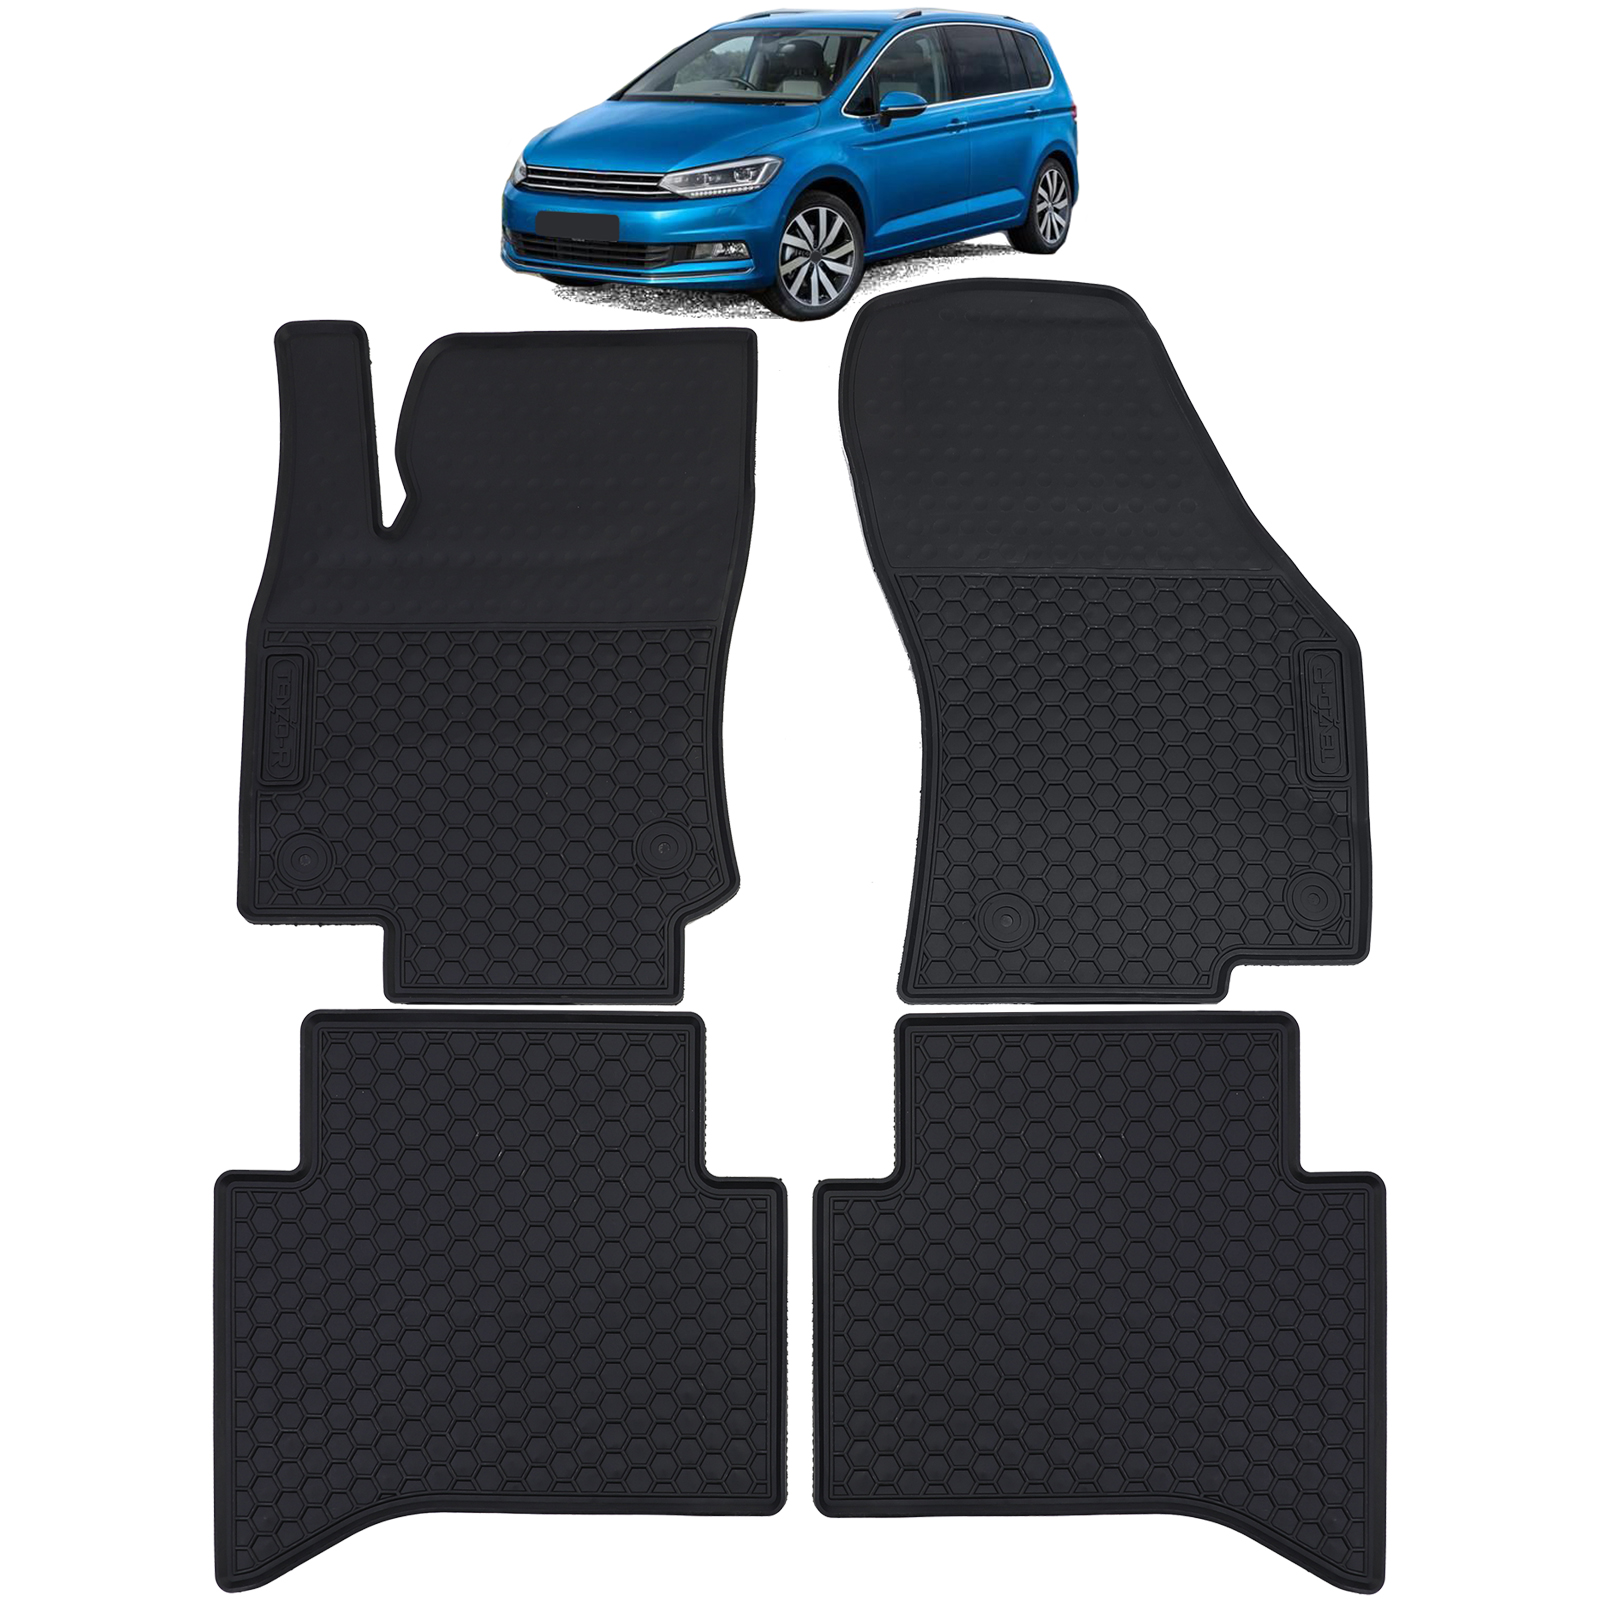 Auto Gummi Fußmatten Schwarz Premium Set für VW Touran II 5T ab 2015 kaufen